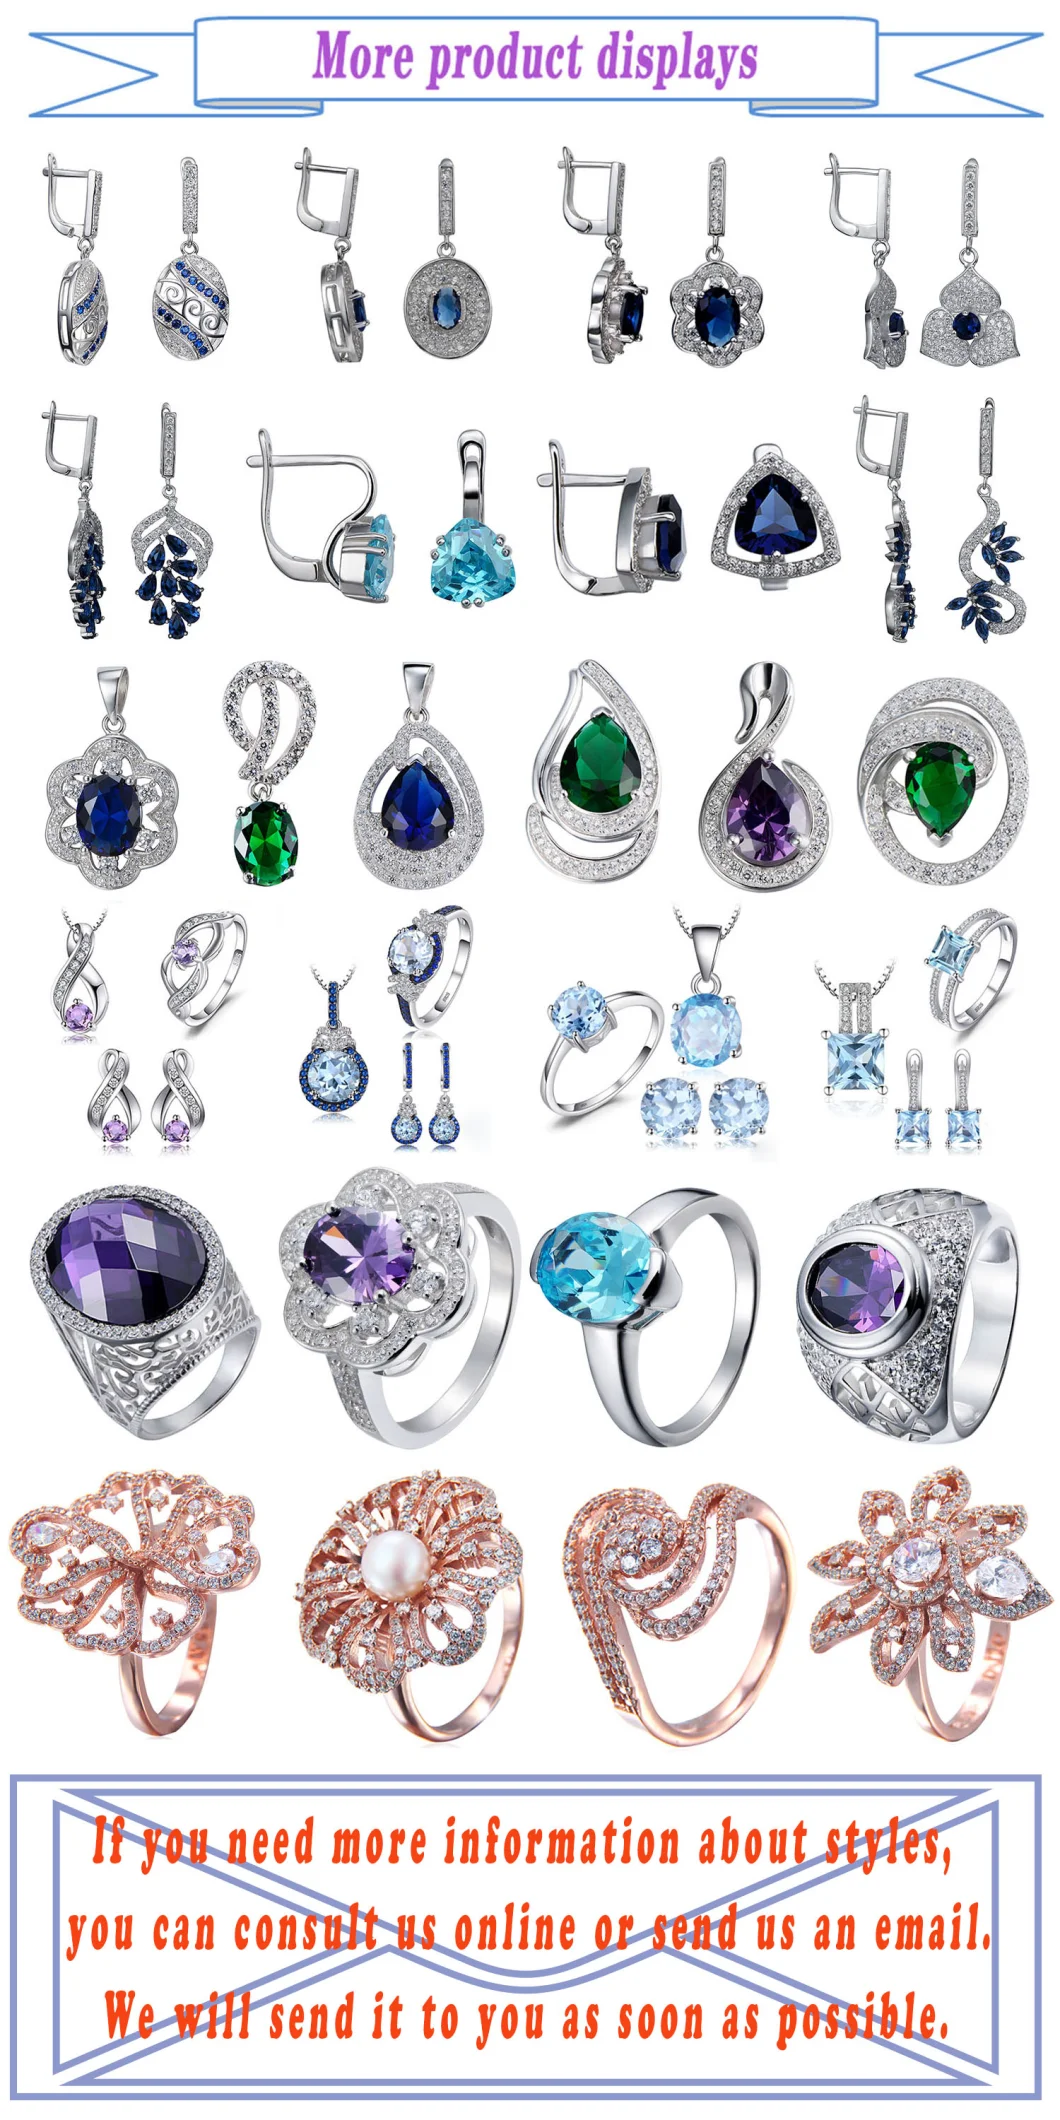 Silver Jewelry Lucky Eye Turkish Blue Evil Eye Earring Fashion Jewelry for Women